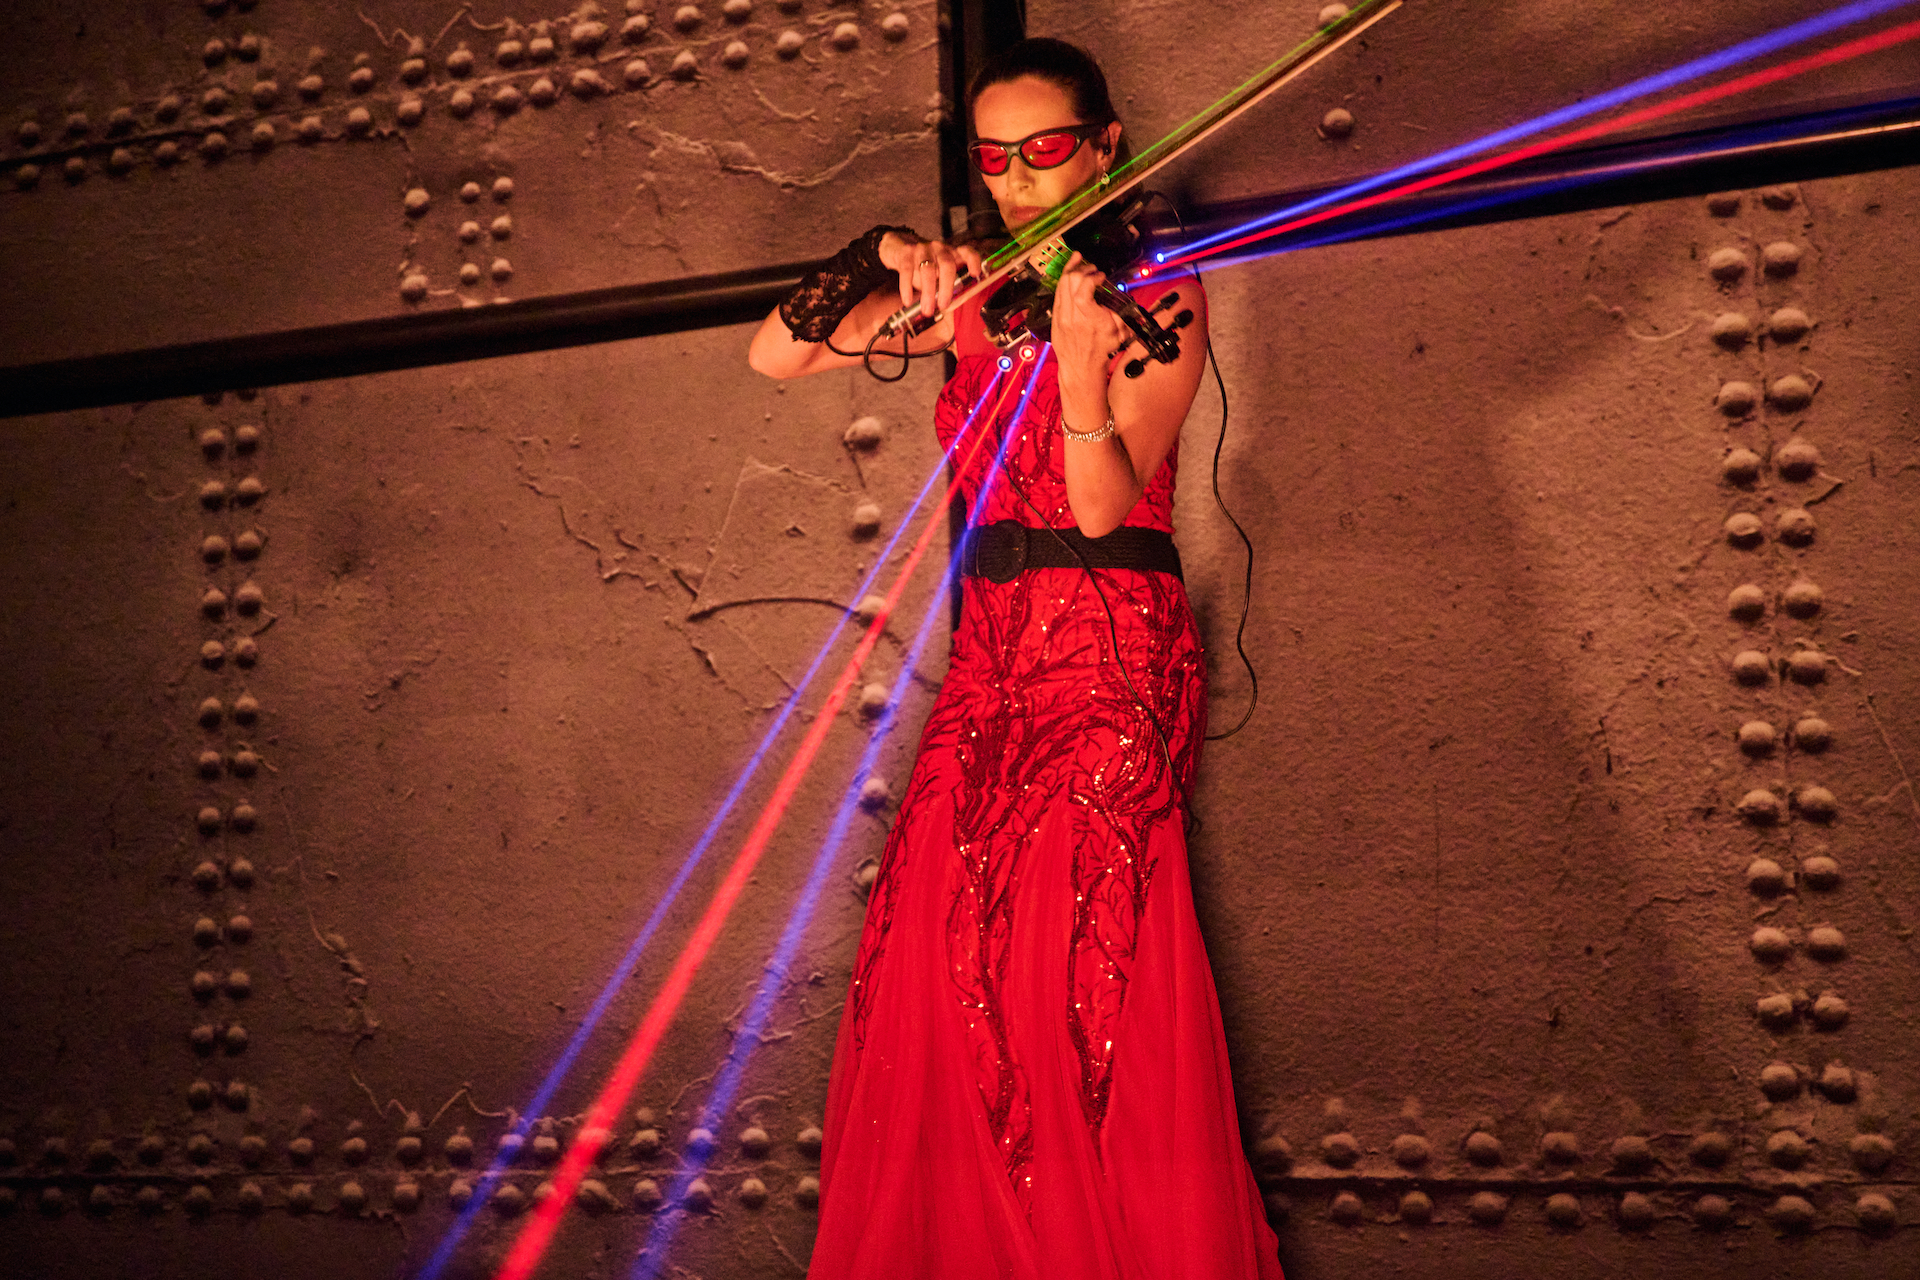 Eine Frau spielt Geige